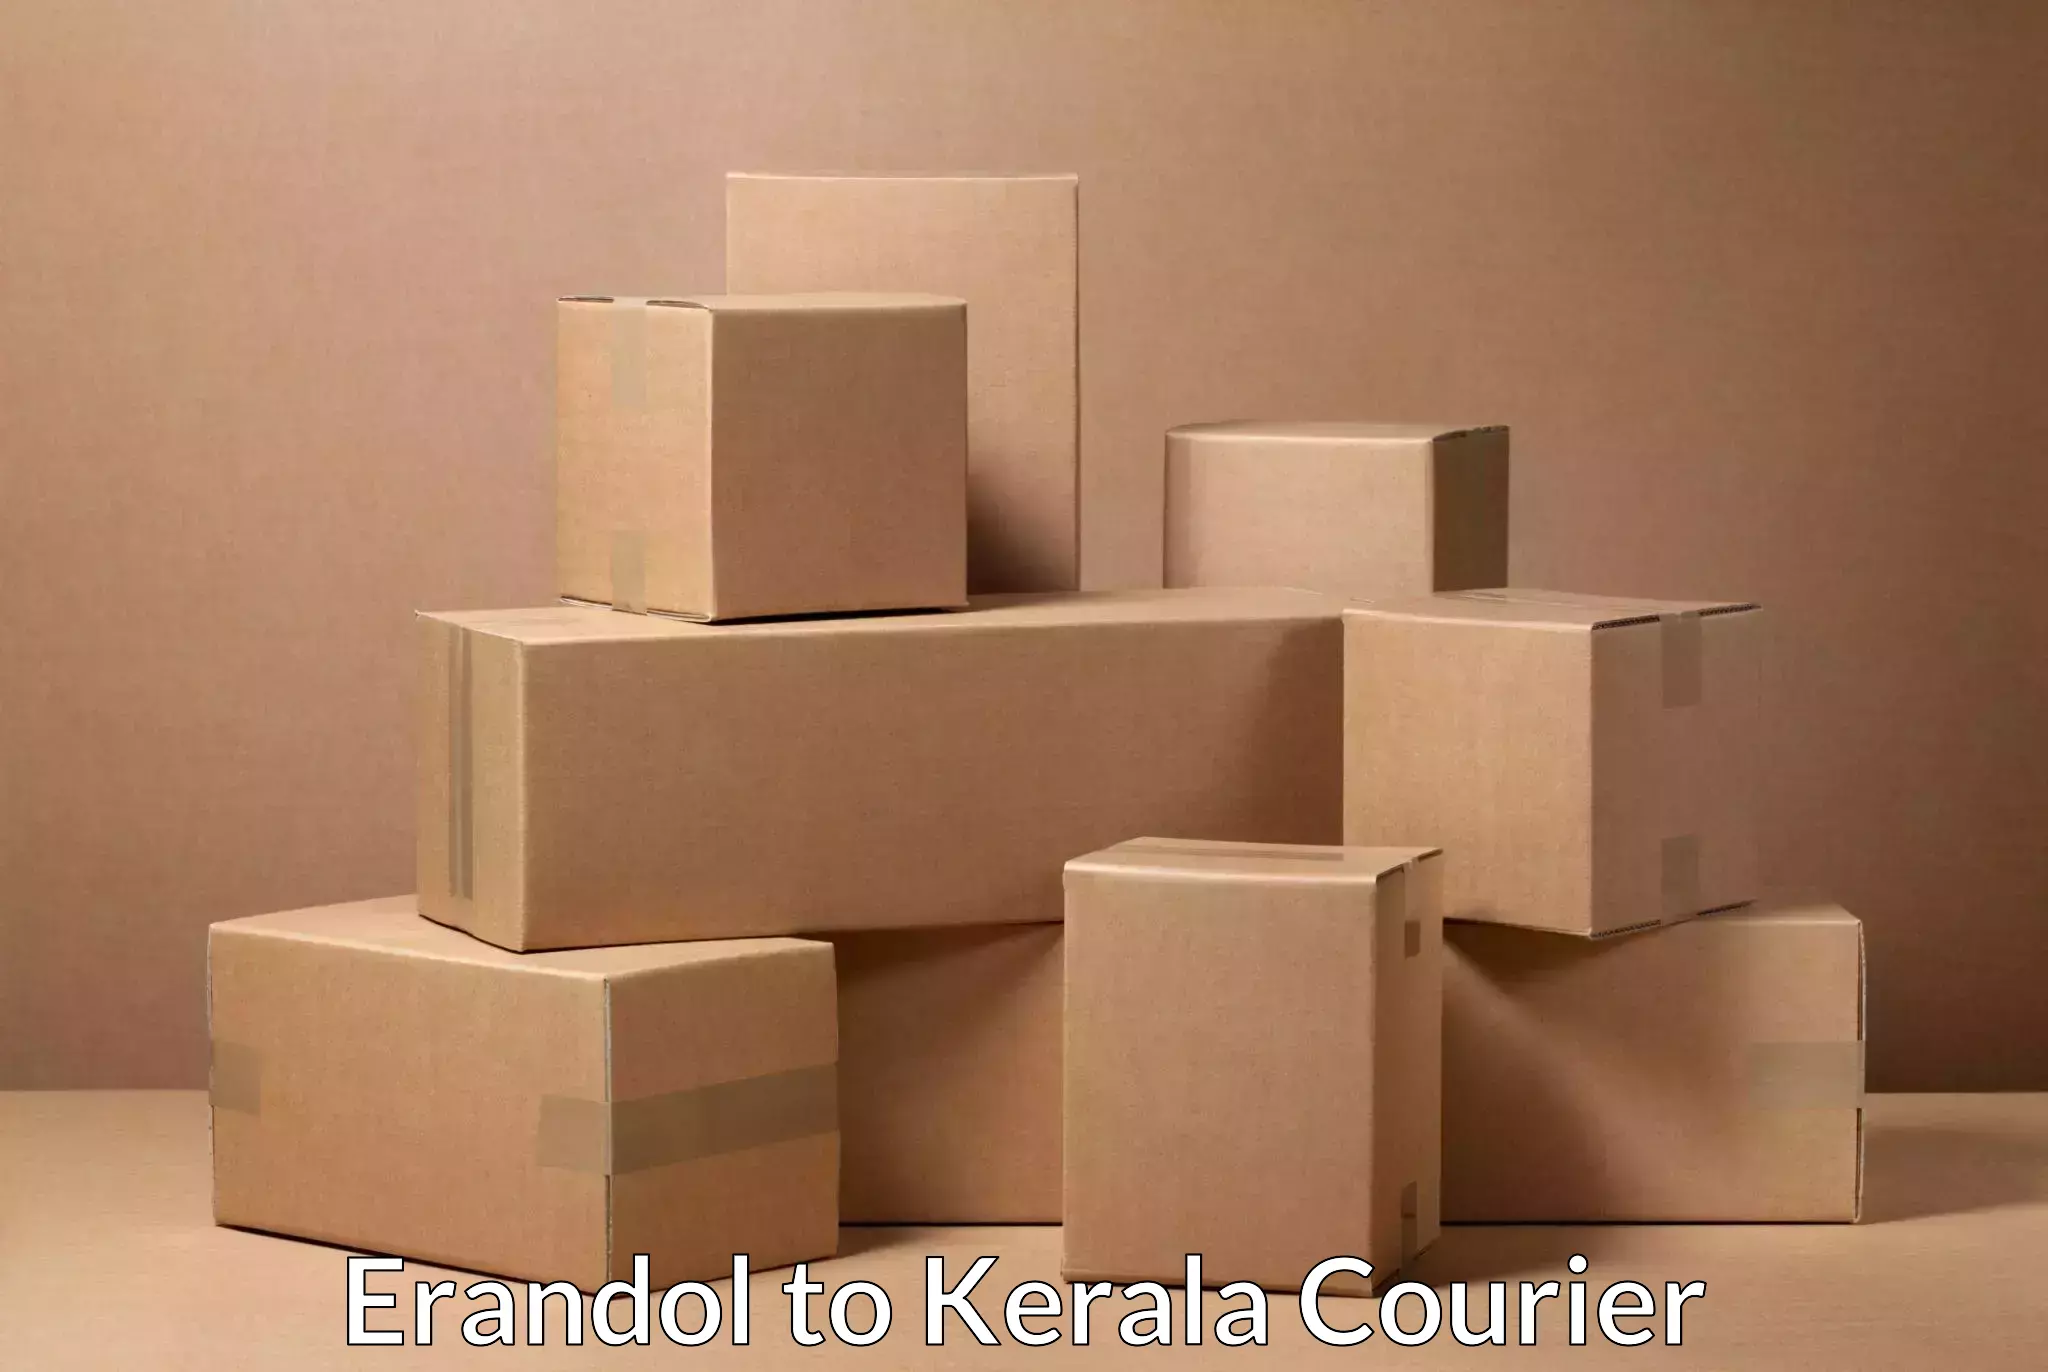 Next-day freight services in Erandol to Kerala